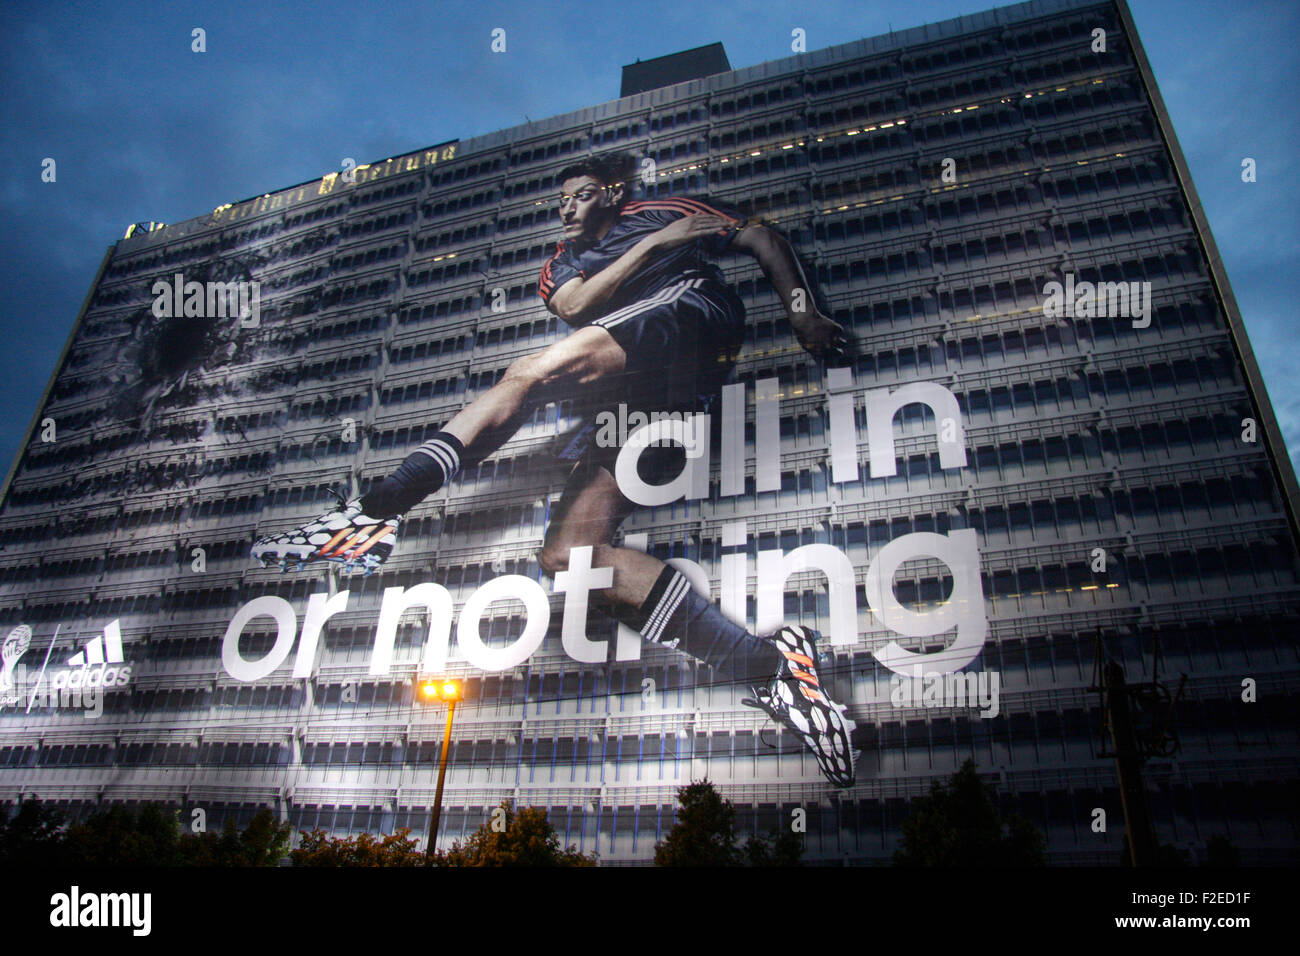 Grossplakat der Firma 'Adidas' zu Zeiten der 2014 Fussballweltmeisterschaft  dans Brasilien auf dem Gebaeude der Berliner Verlages Photo Stock - Alamy